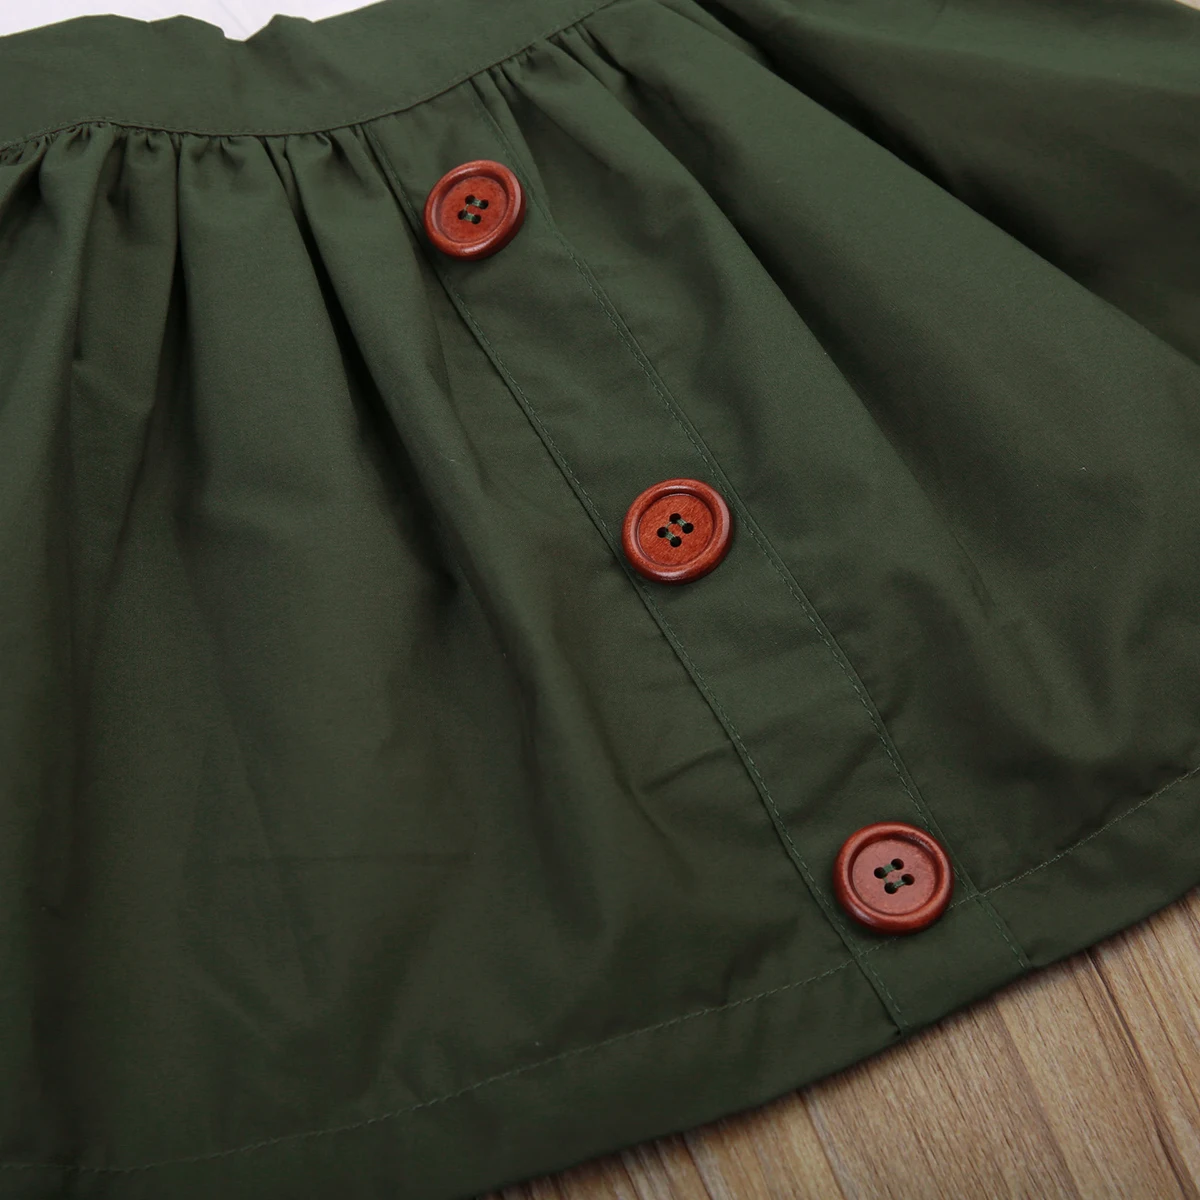 Оборками Обувь для девочек Юбочные костюмы для женщин Harajuku Детская одежда для маленьких девочек Блузка с длинными рукавами белая рубашка Армейский зеленый юбка